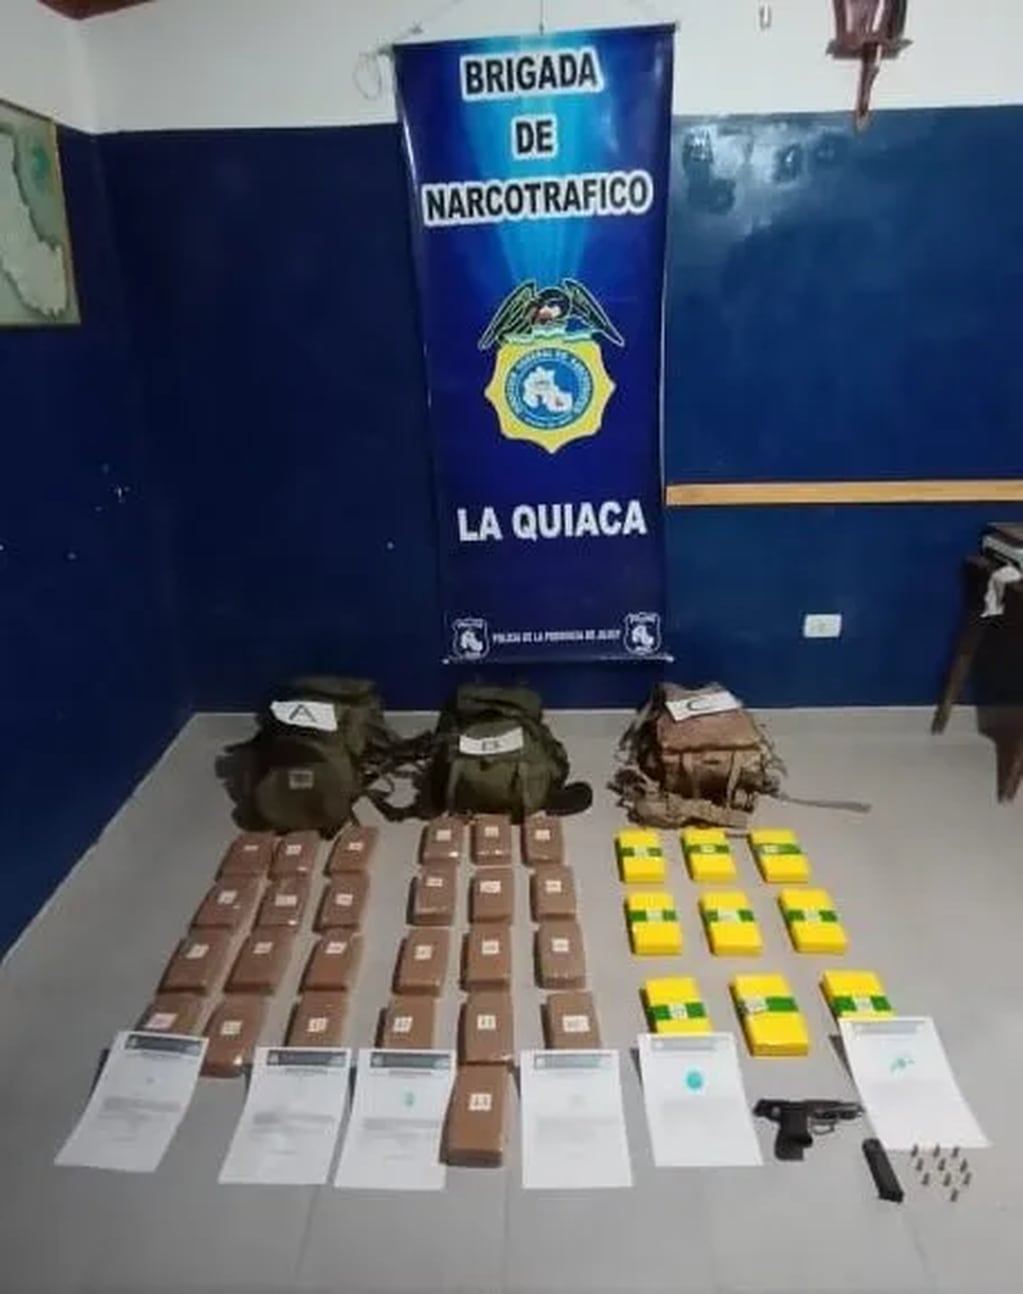 Los 34 paquetes conteniendo cocaína perfectamente empacada para su entrega a los compradores, y el arma con sus correspondientes proyectiles, que llevaba el traficante detenido en Jujuy.